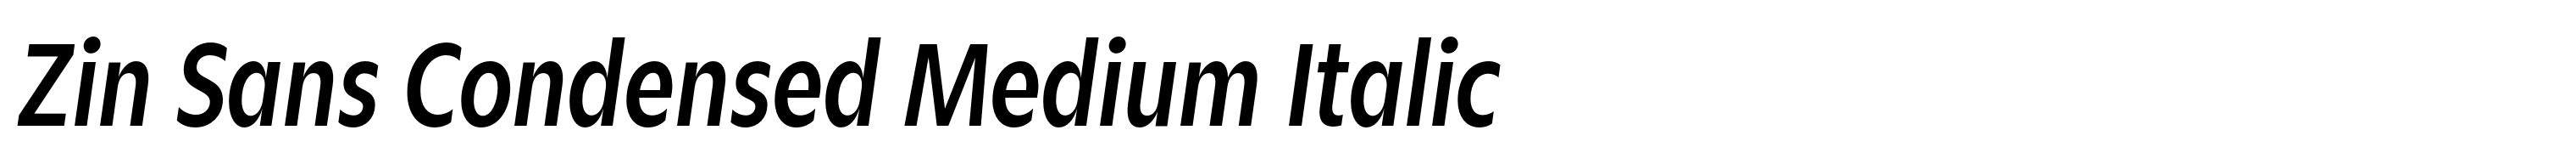 Zin Sans Condensed Medium Italic